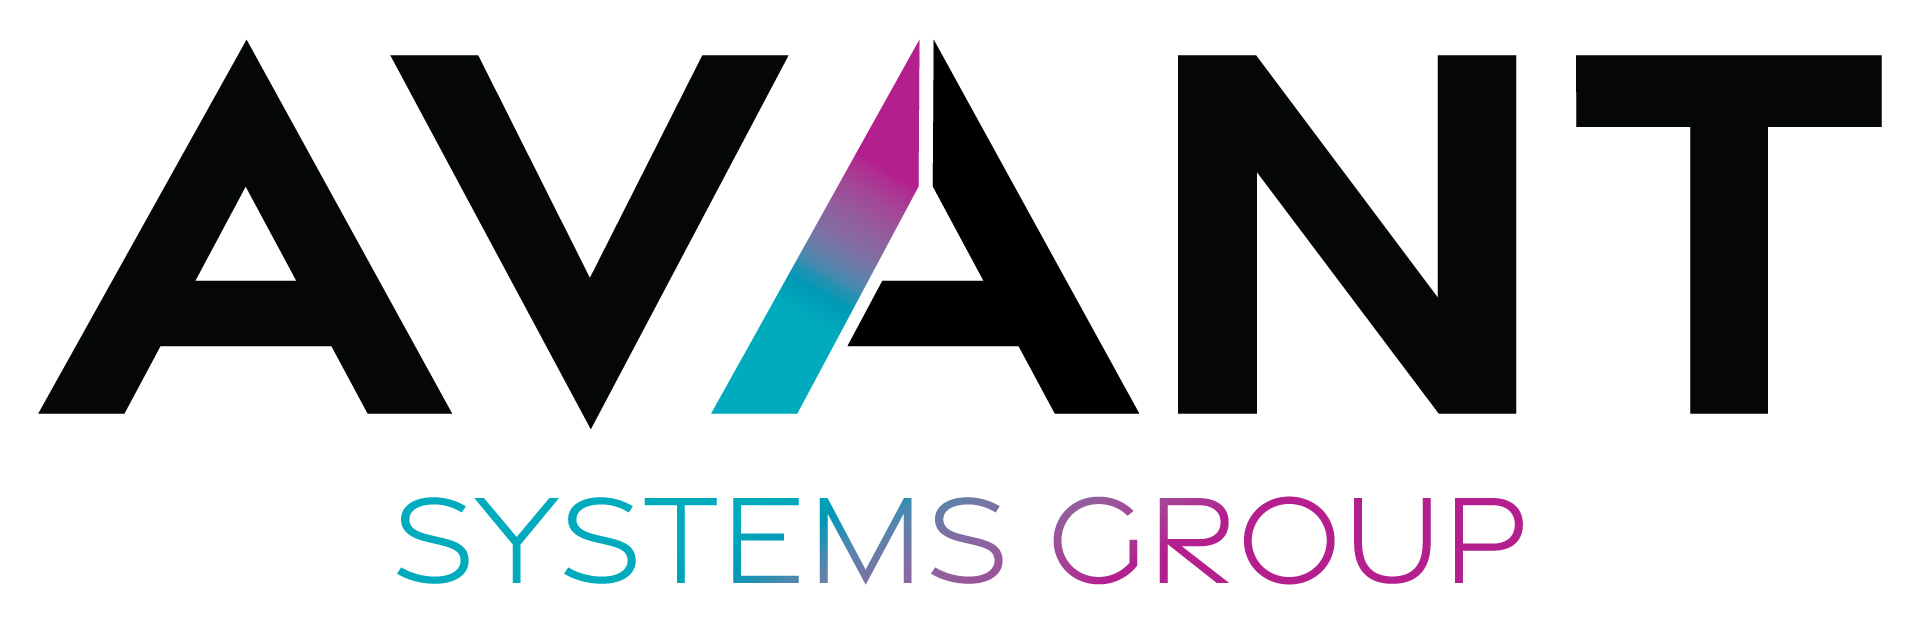 Avant systems group logo